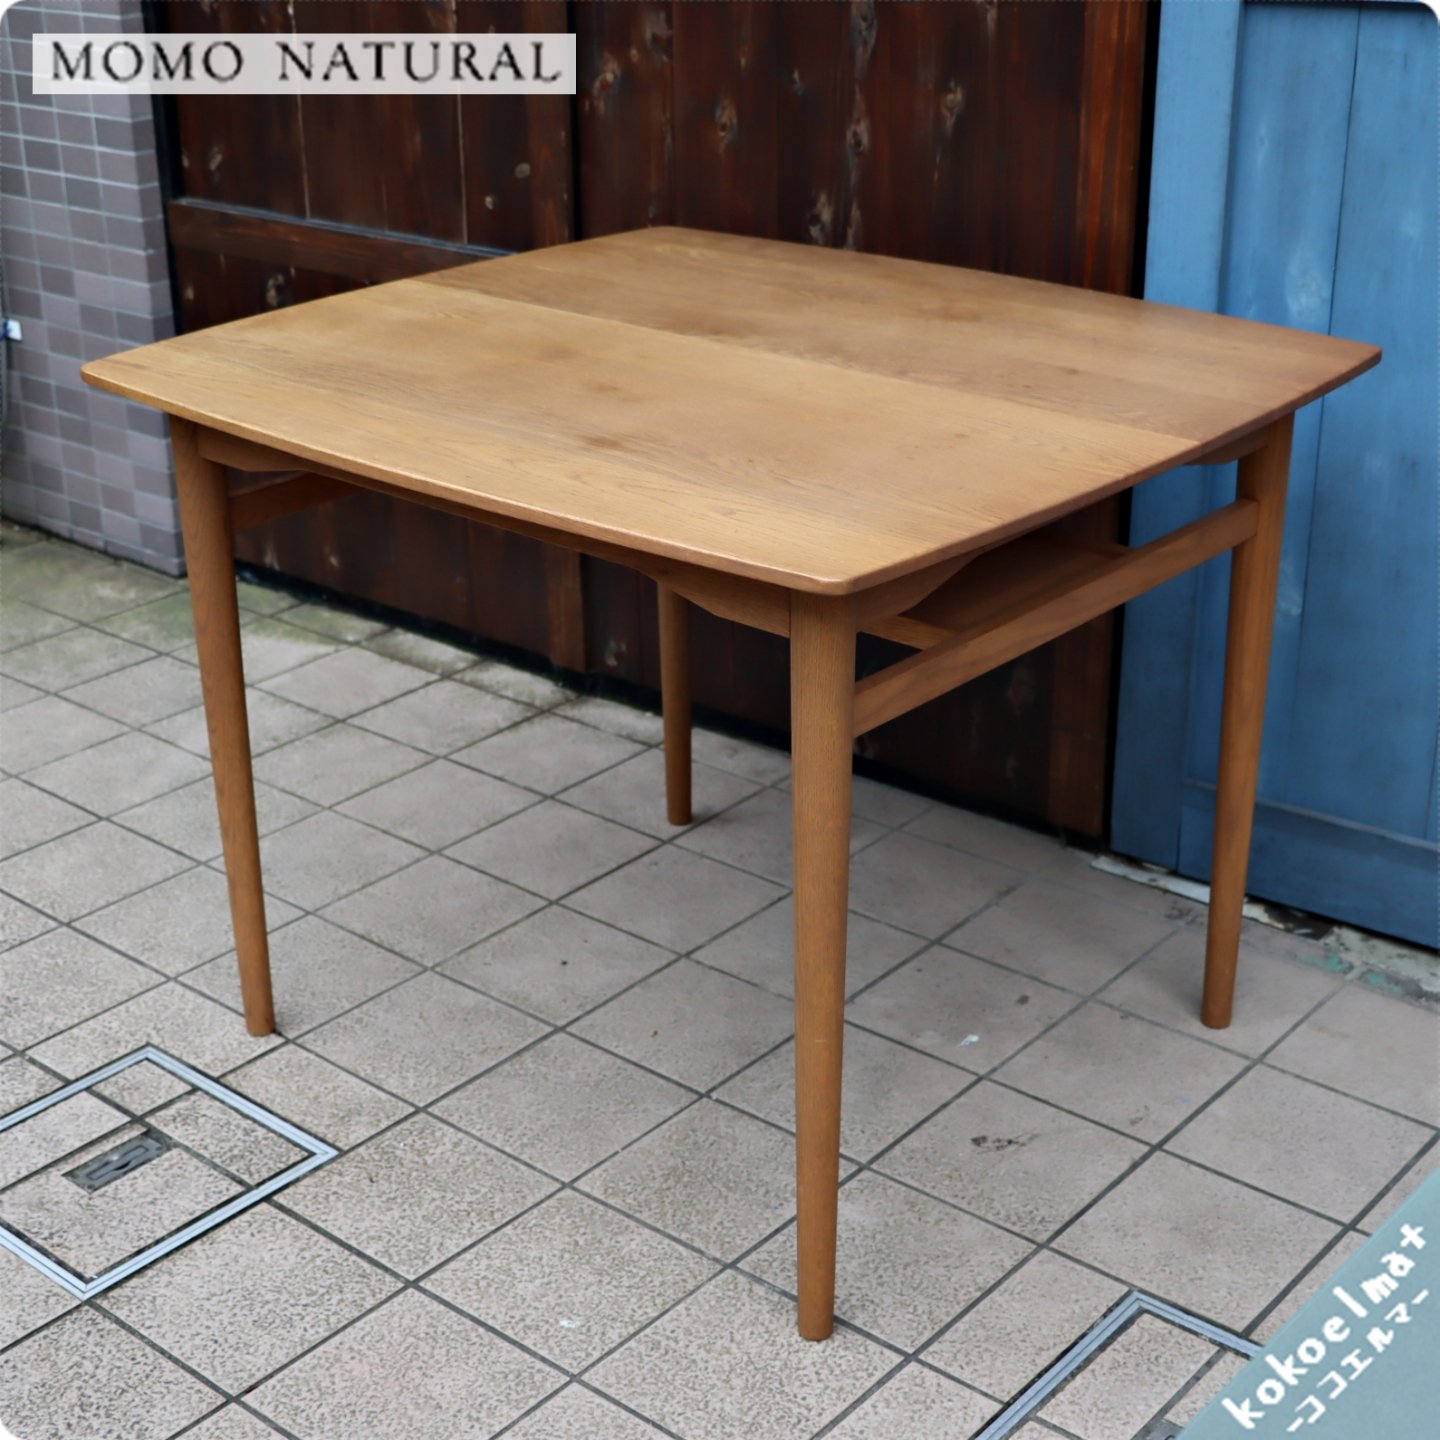 MOMO natural(モモナチュラル)のVENT ダイニングテーブル。オーク材の